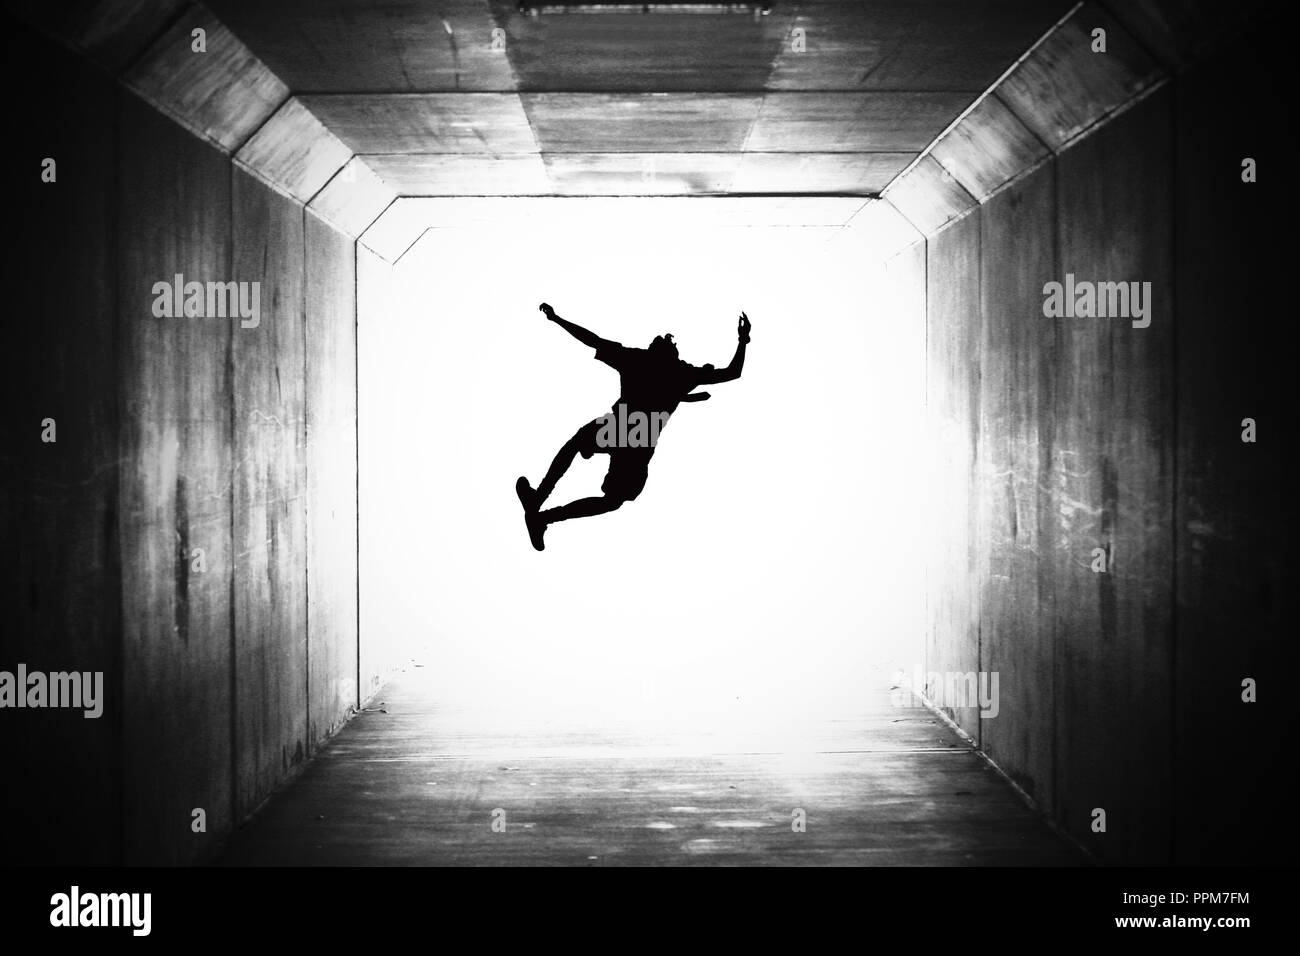 BW imagen en blanco y negro de un solo estudiante silueteado saltando y haciendo clic en sus talones en un túnel hacia la luz, la graduación Foto de stock